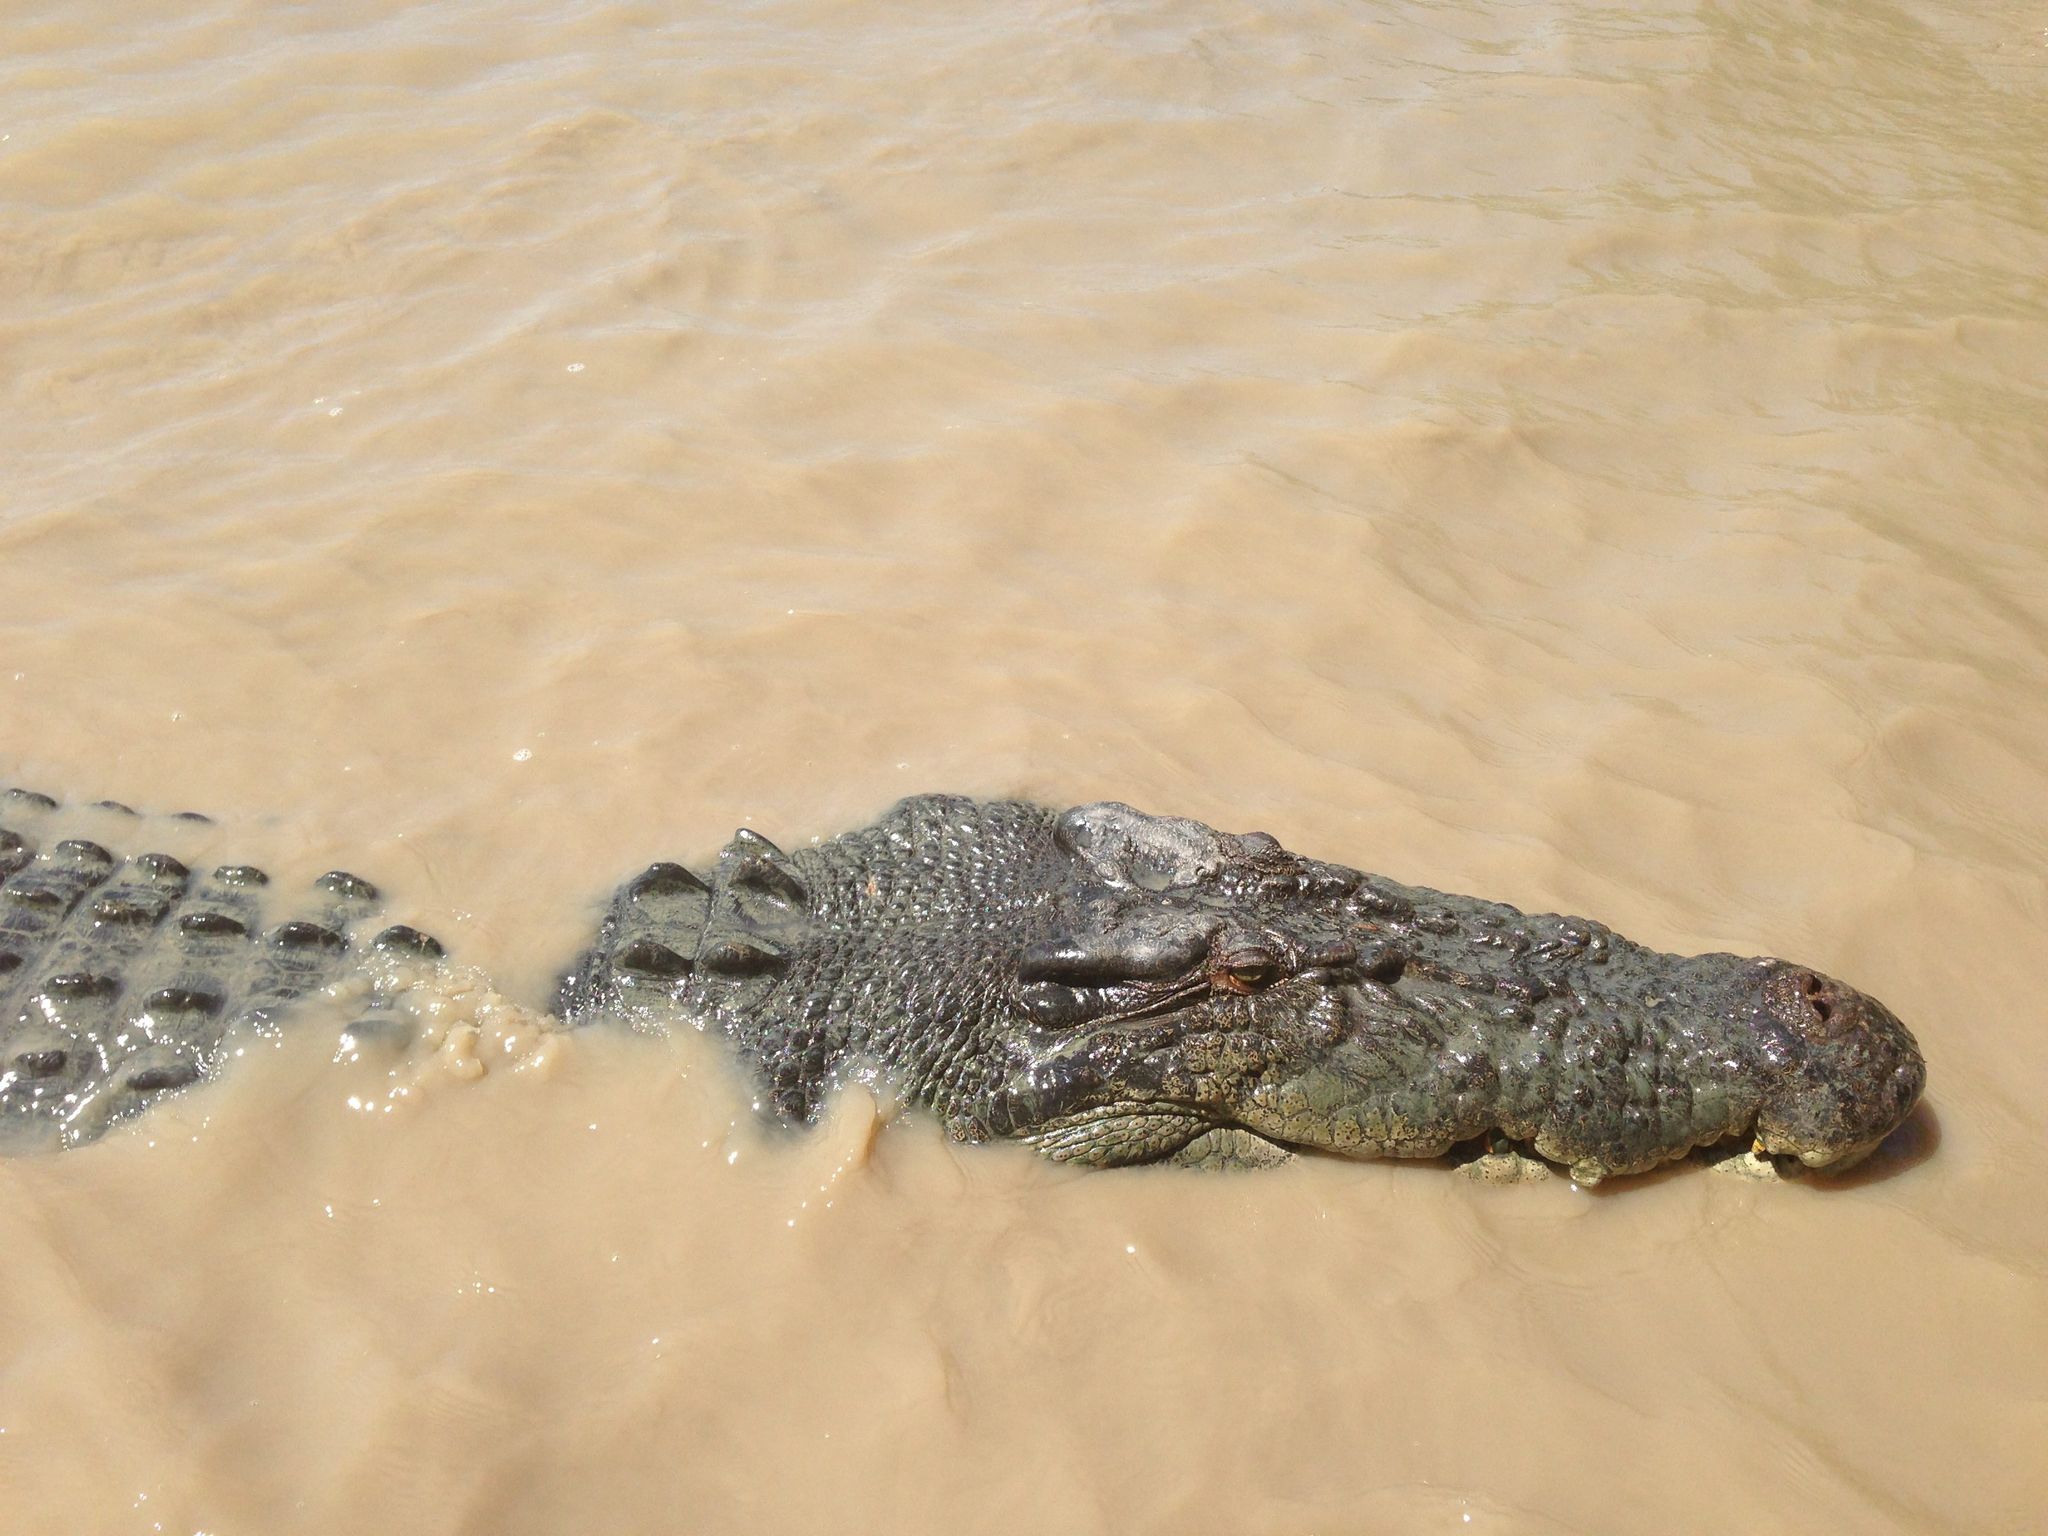 12-Jährige in Australien wahrscheinlich von Krokodil getötet